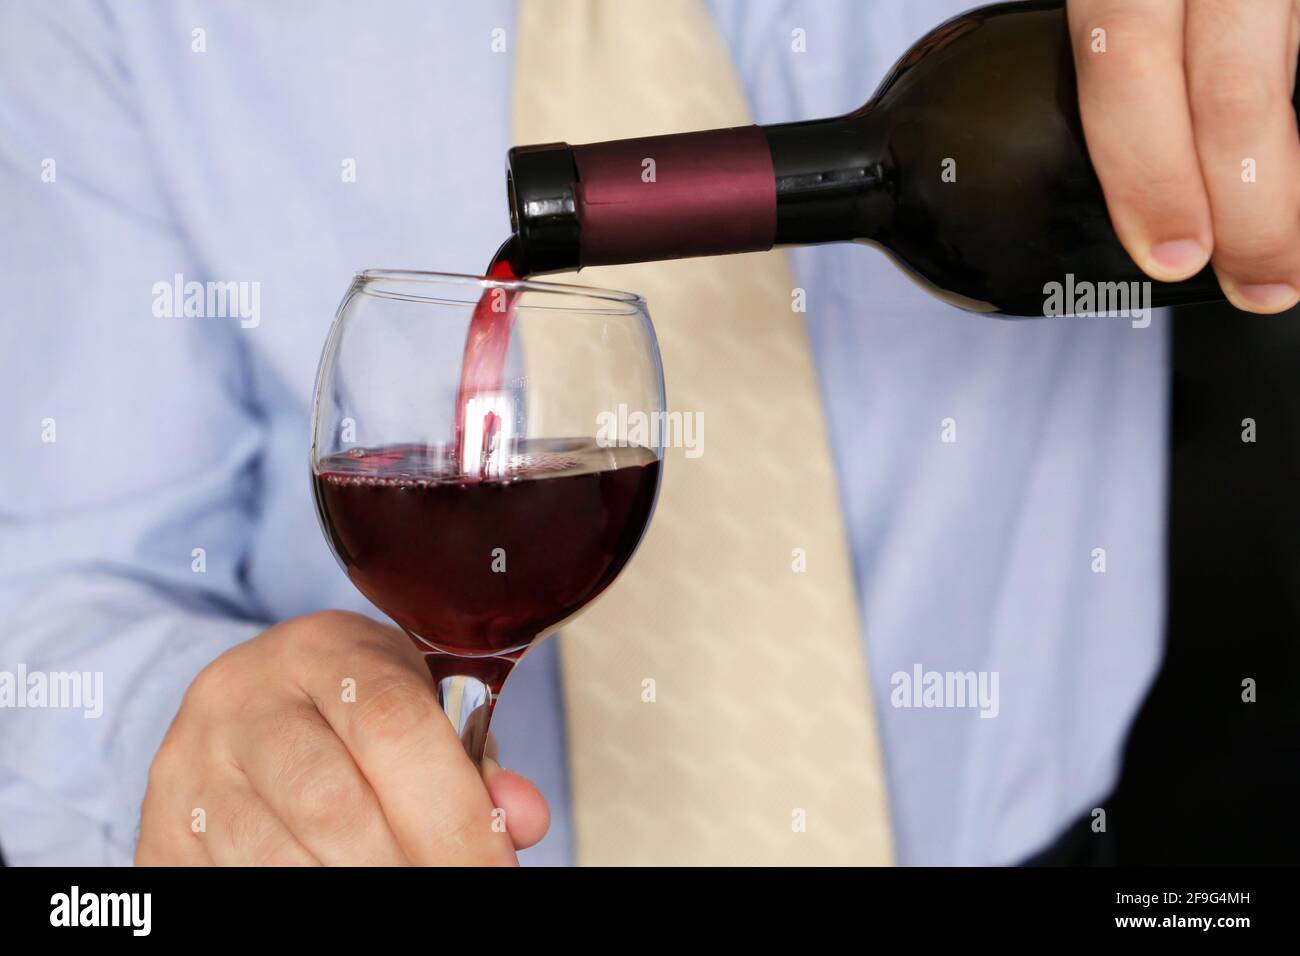 Uomo in abiti da lavoro che versa vino rosso in un bicchiere dalla bottiglia. Festa aziendale in ufficio, cena romantica in un ristorante Foto Stock